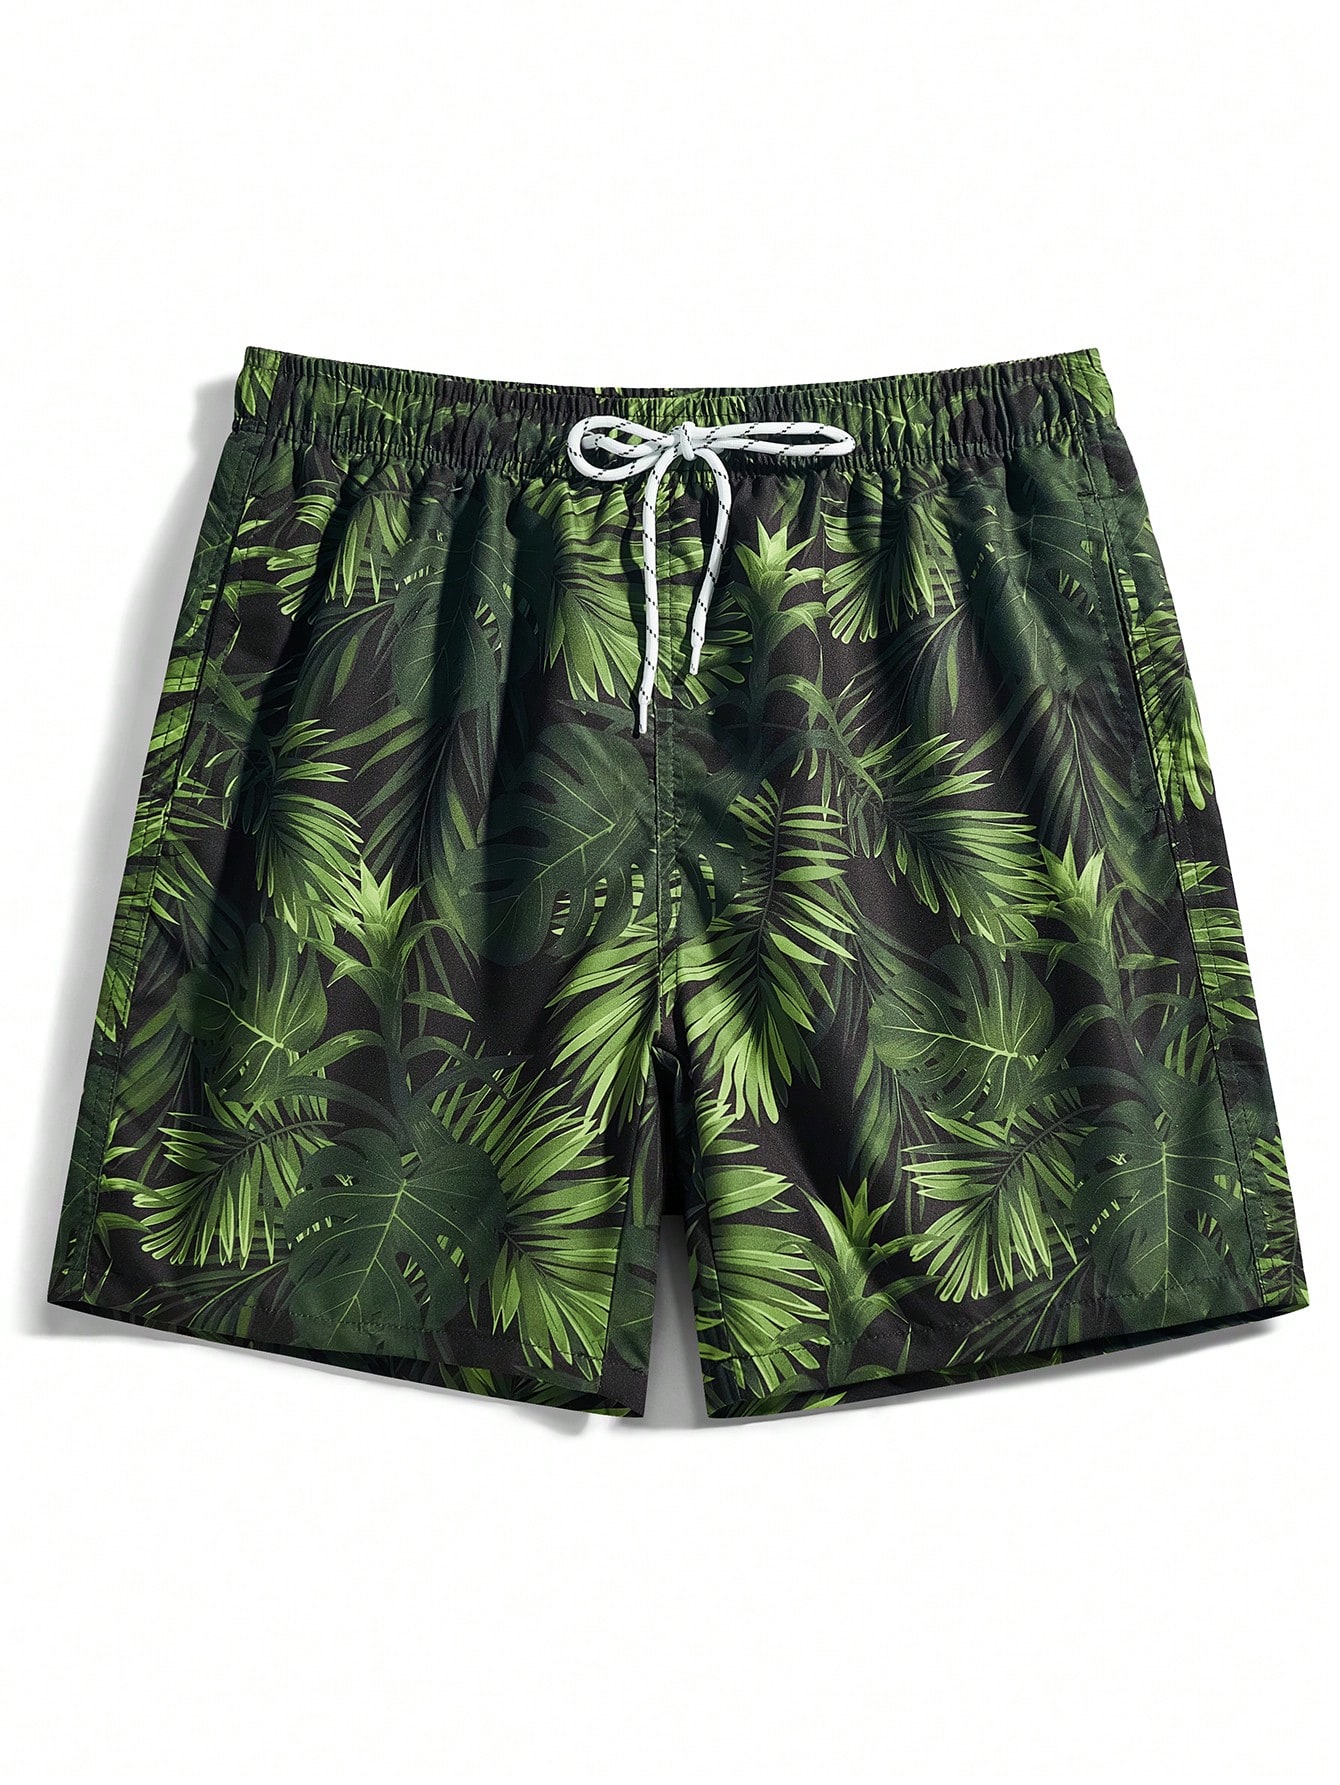 Мужские пляжные шорты Manfinity с тропическим принтом и завязками на талии, армейский зеленый шорты пляжные мужские termit красный